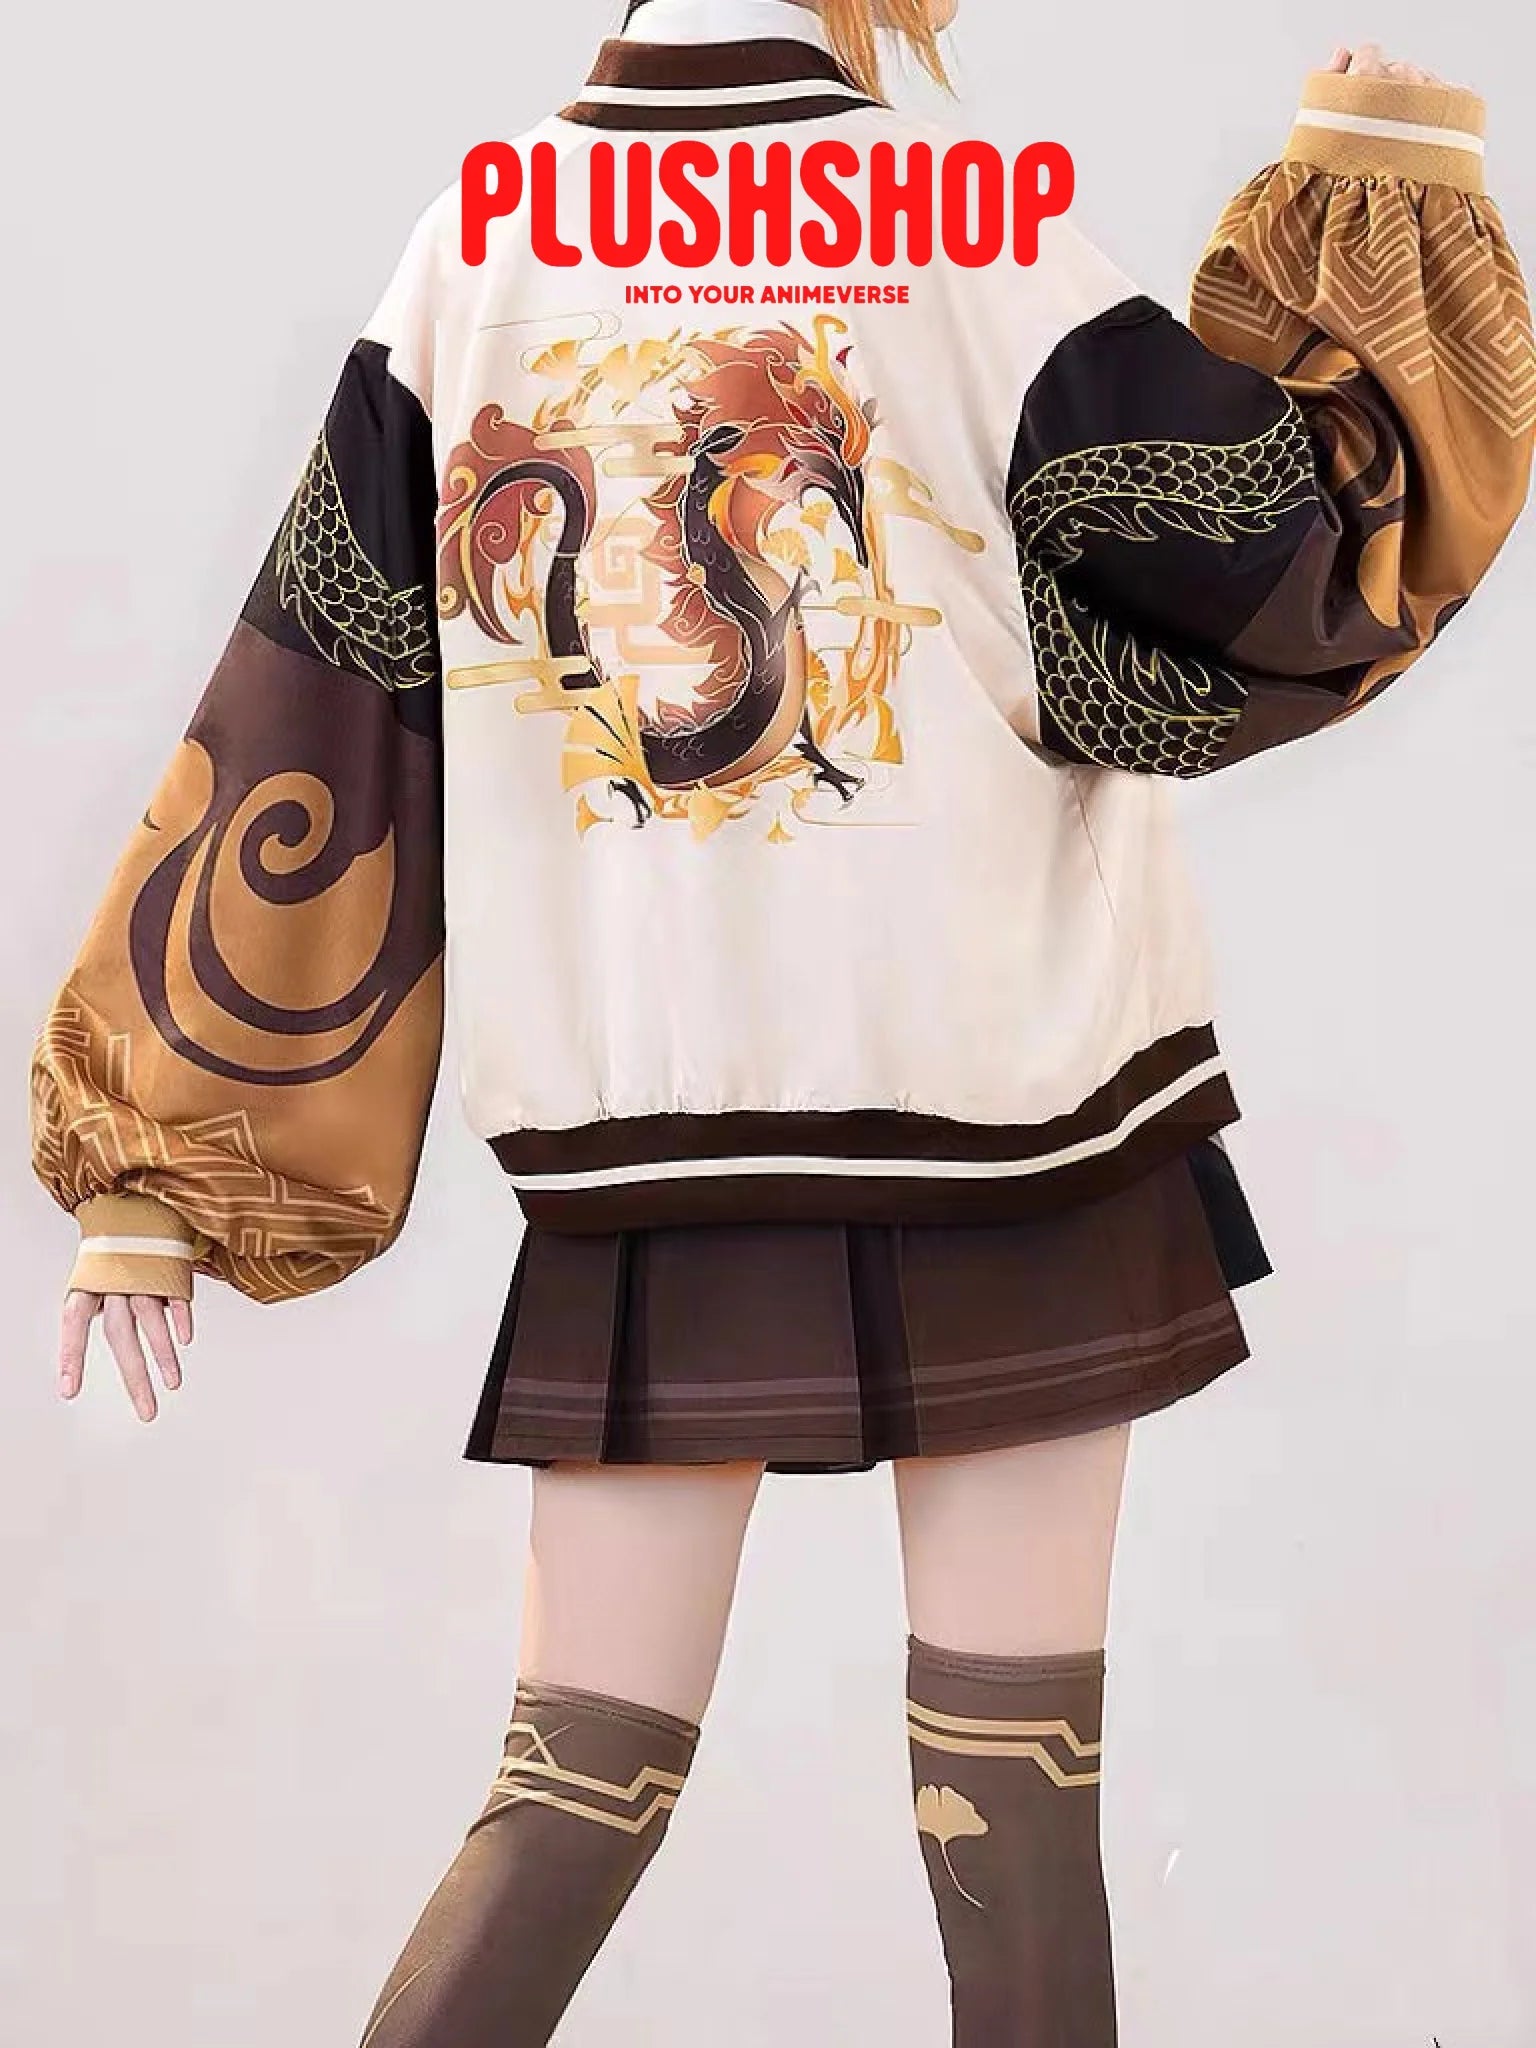 Genshin Impact Zhongli Theme Costume Casual Wearing Outfit